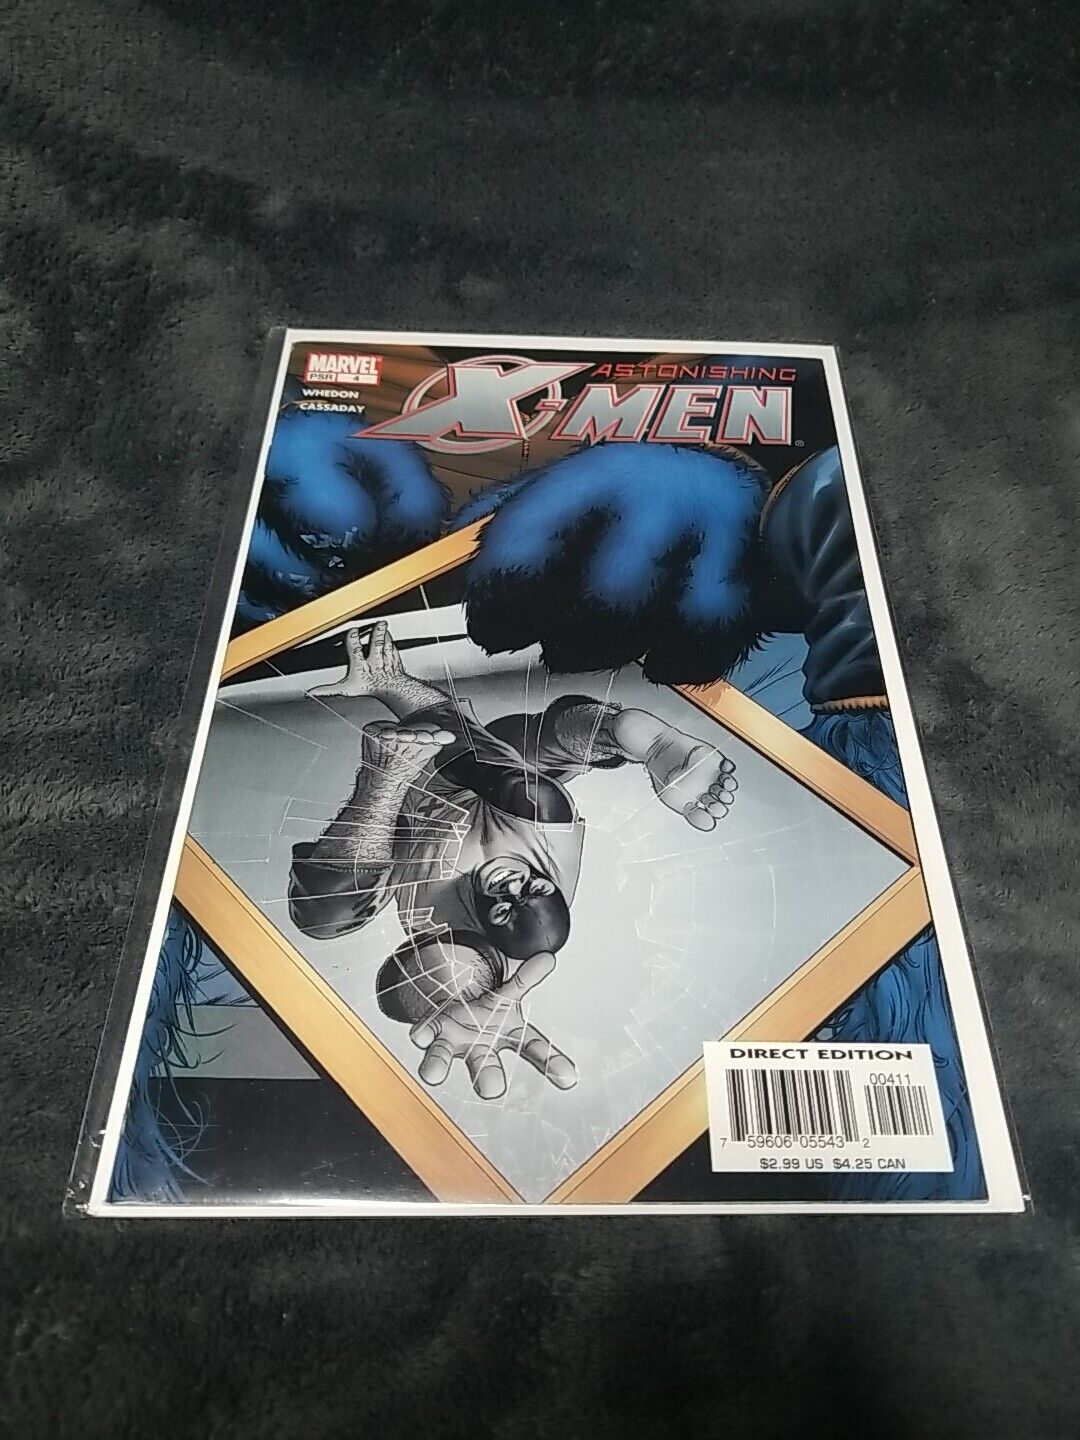 Astonishing X-Men #4 NM 1st Appearance of Armor John Cassaday Cover 2004 Marvel